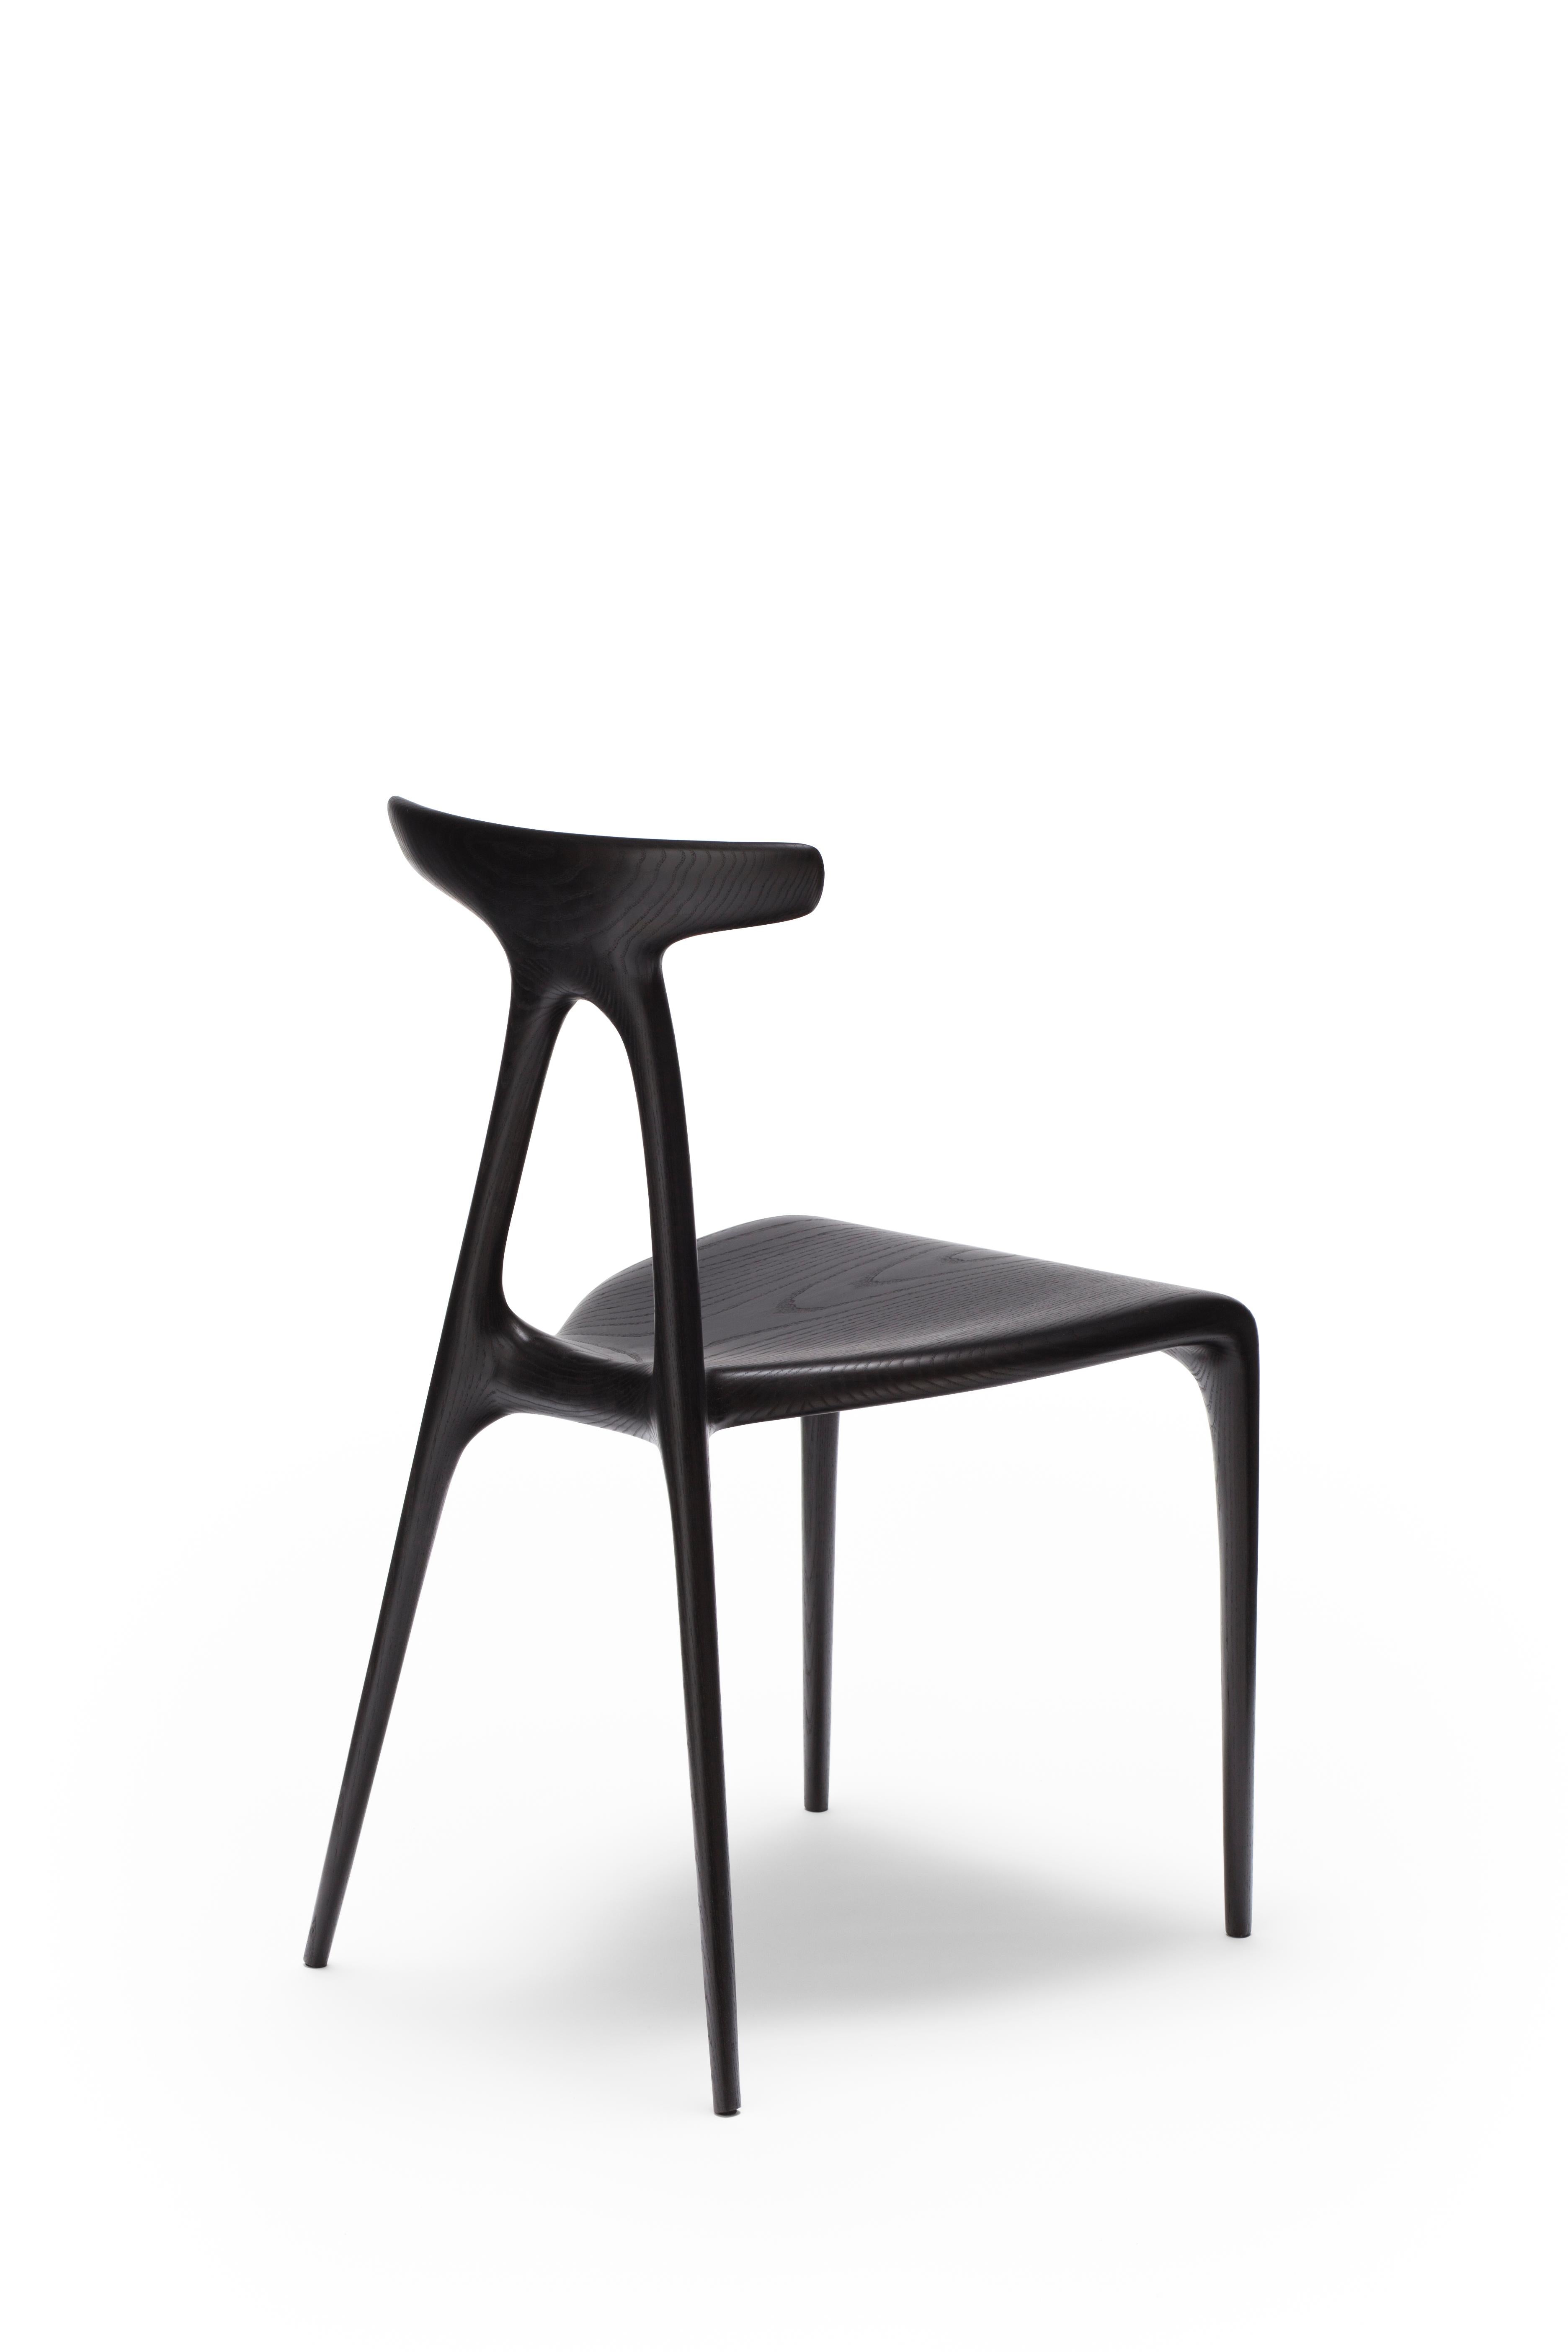 Une chaise empilable polyvalente contemporaine en bois massif, produite à l'aide des dernières technologies de production de meubles en bois façonné. Le design s'enorgueillit d'un geste architectural fort qui confère à la chaise sa force inhérente :